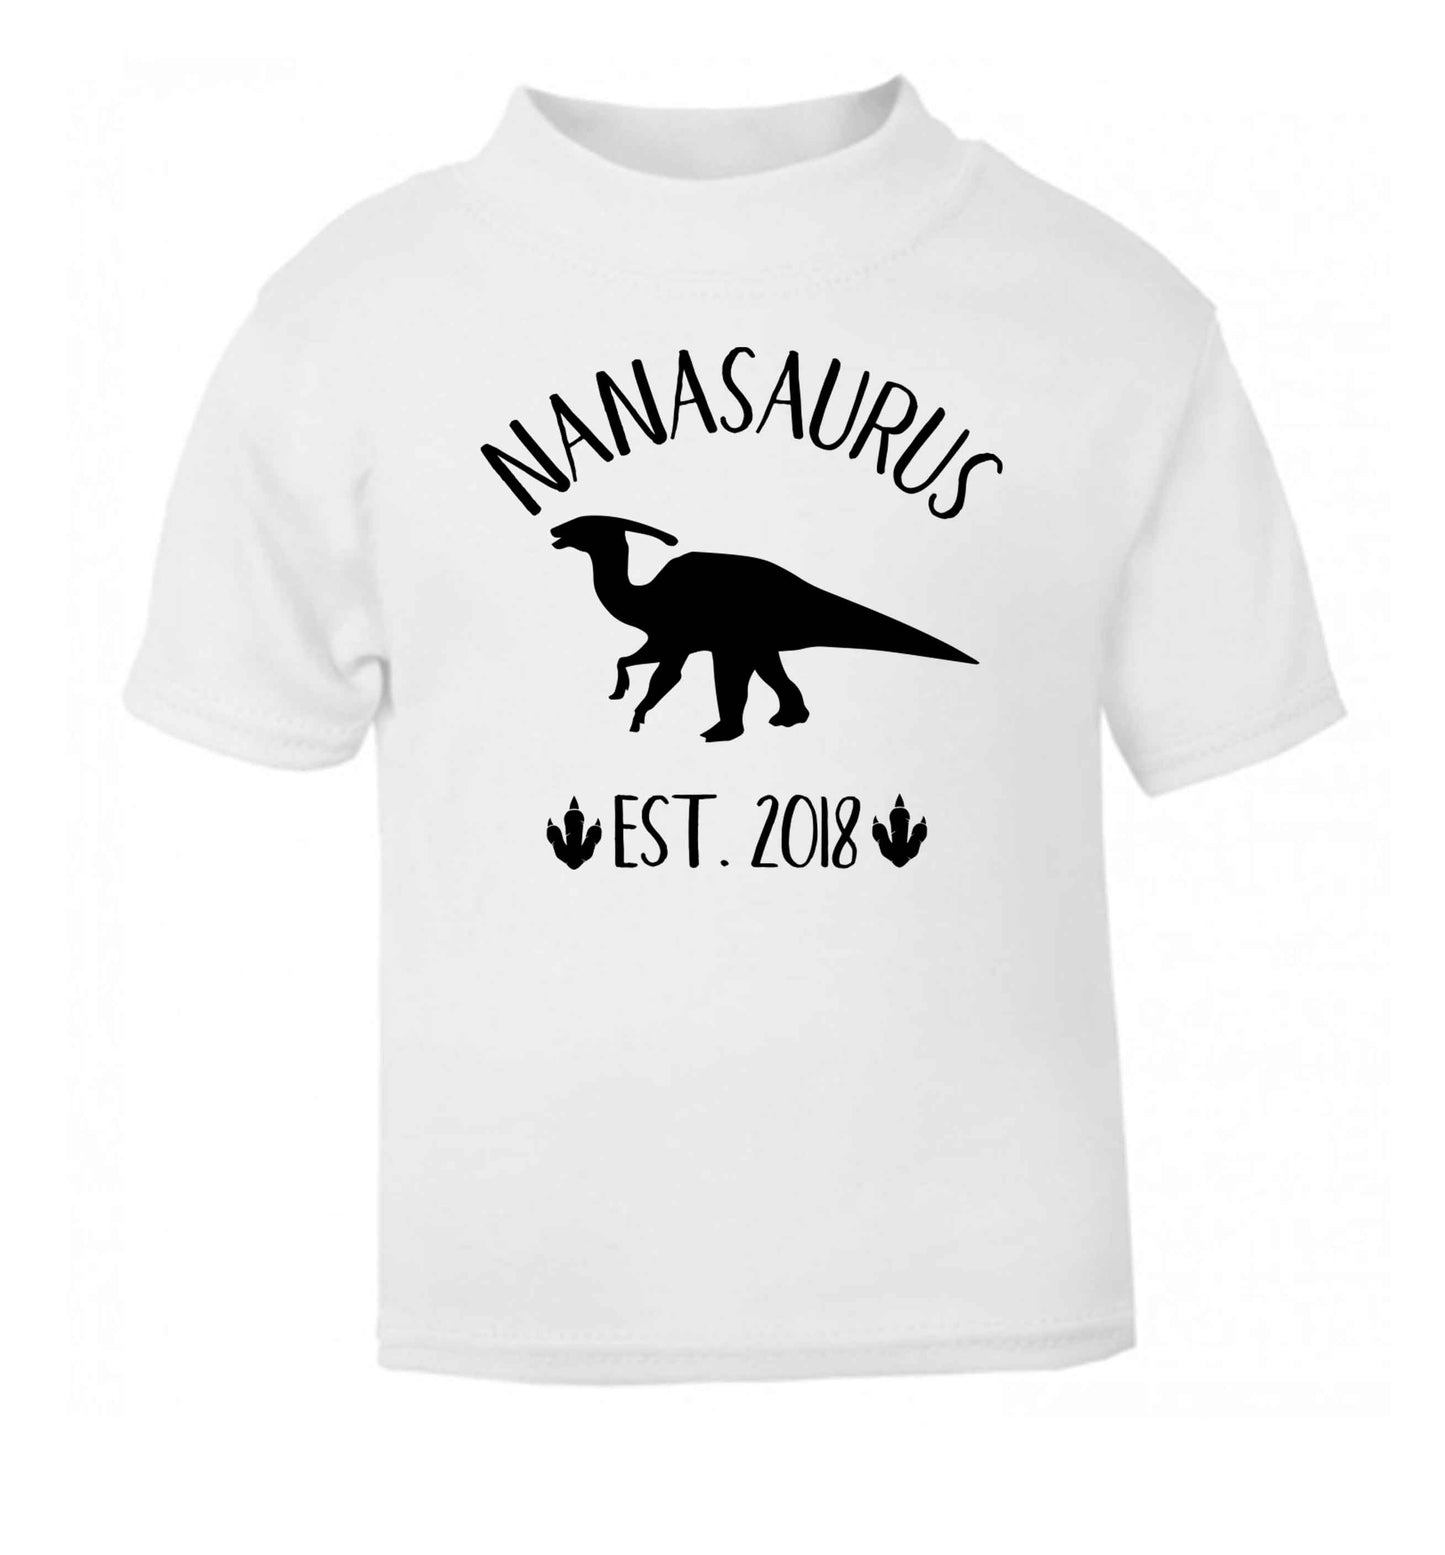 Personalised nanasaurus since (custom date) white Baby Toddler Tshirt 2 Years